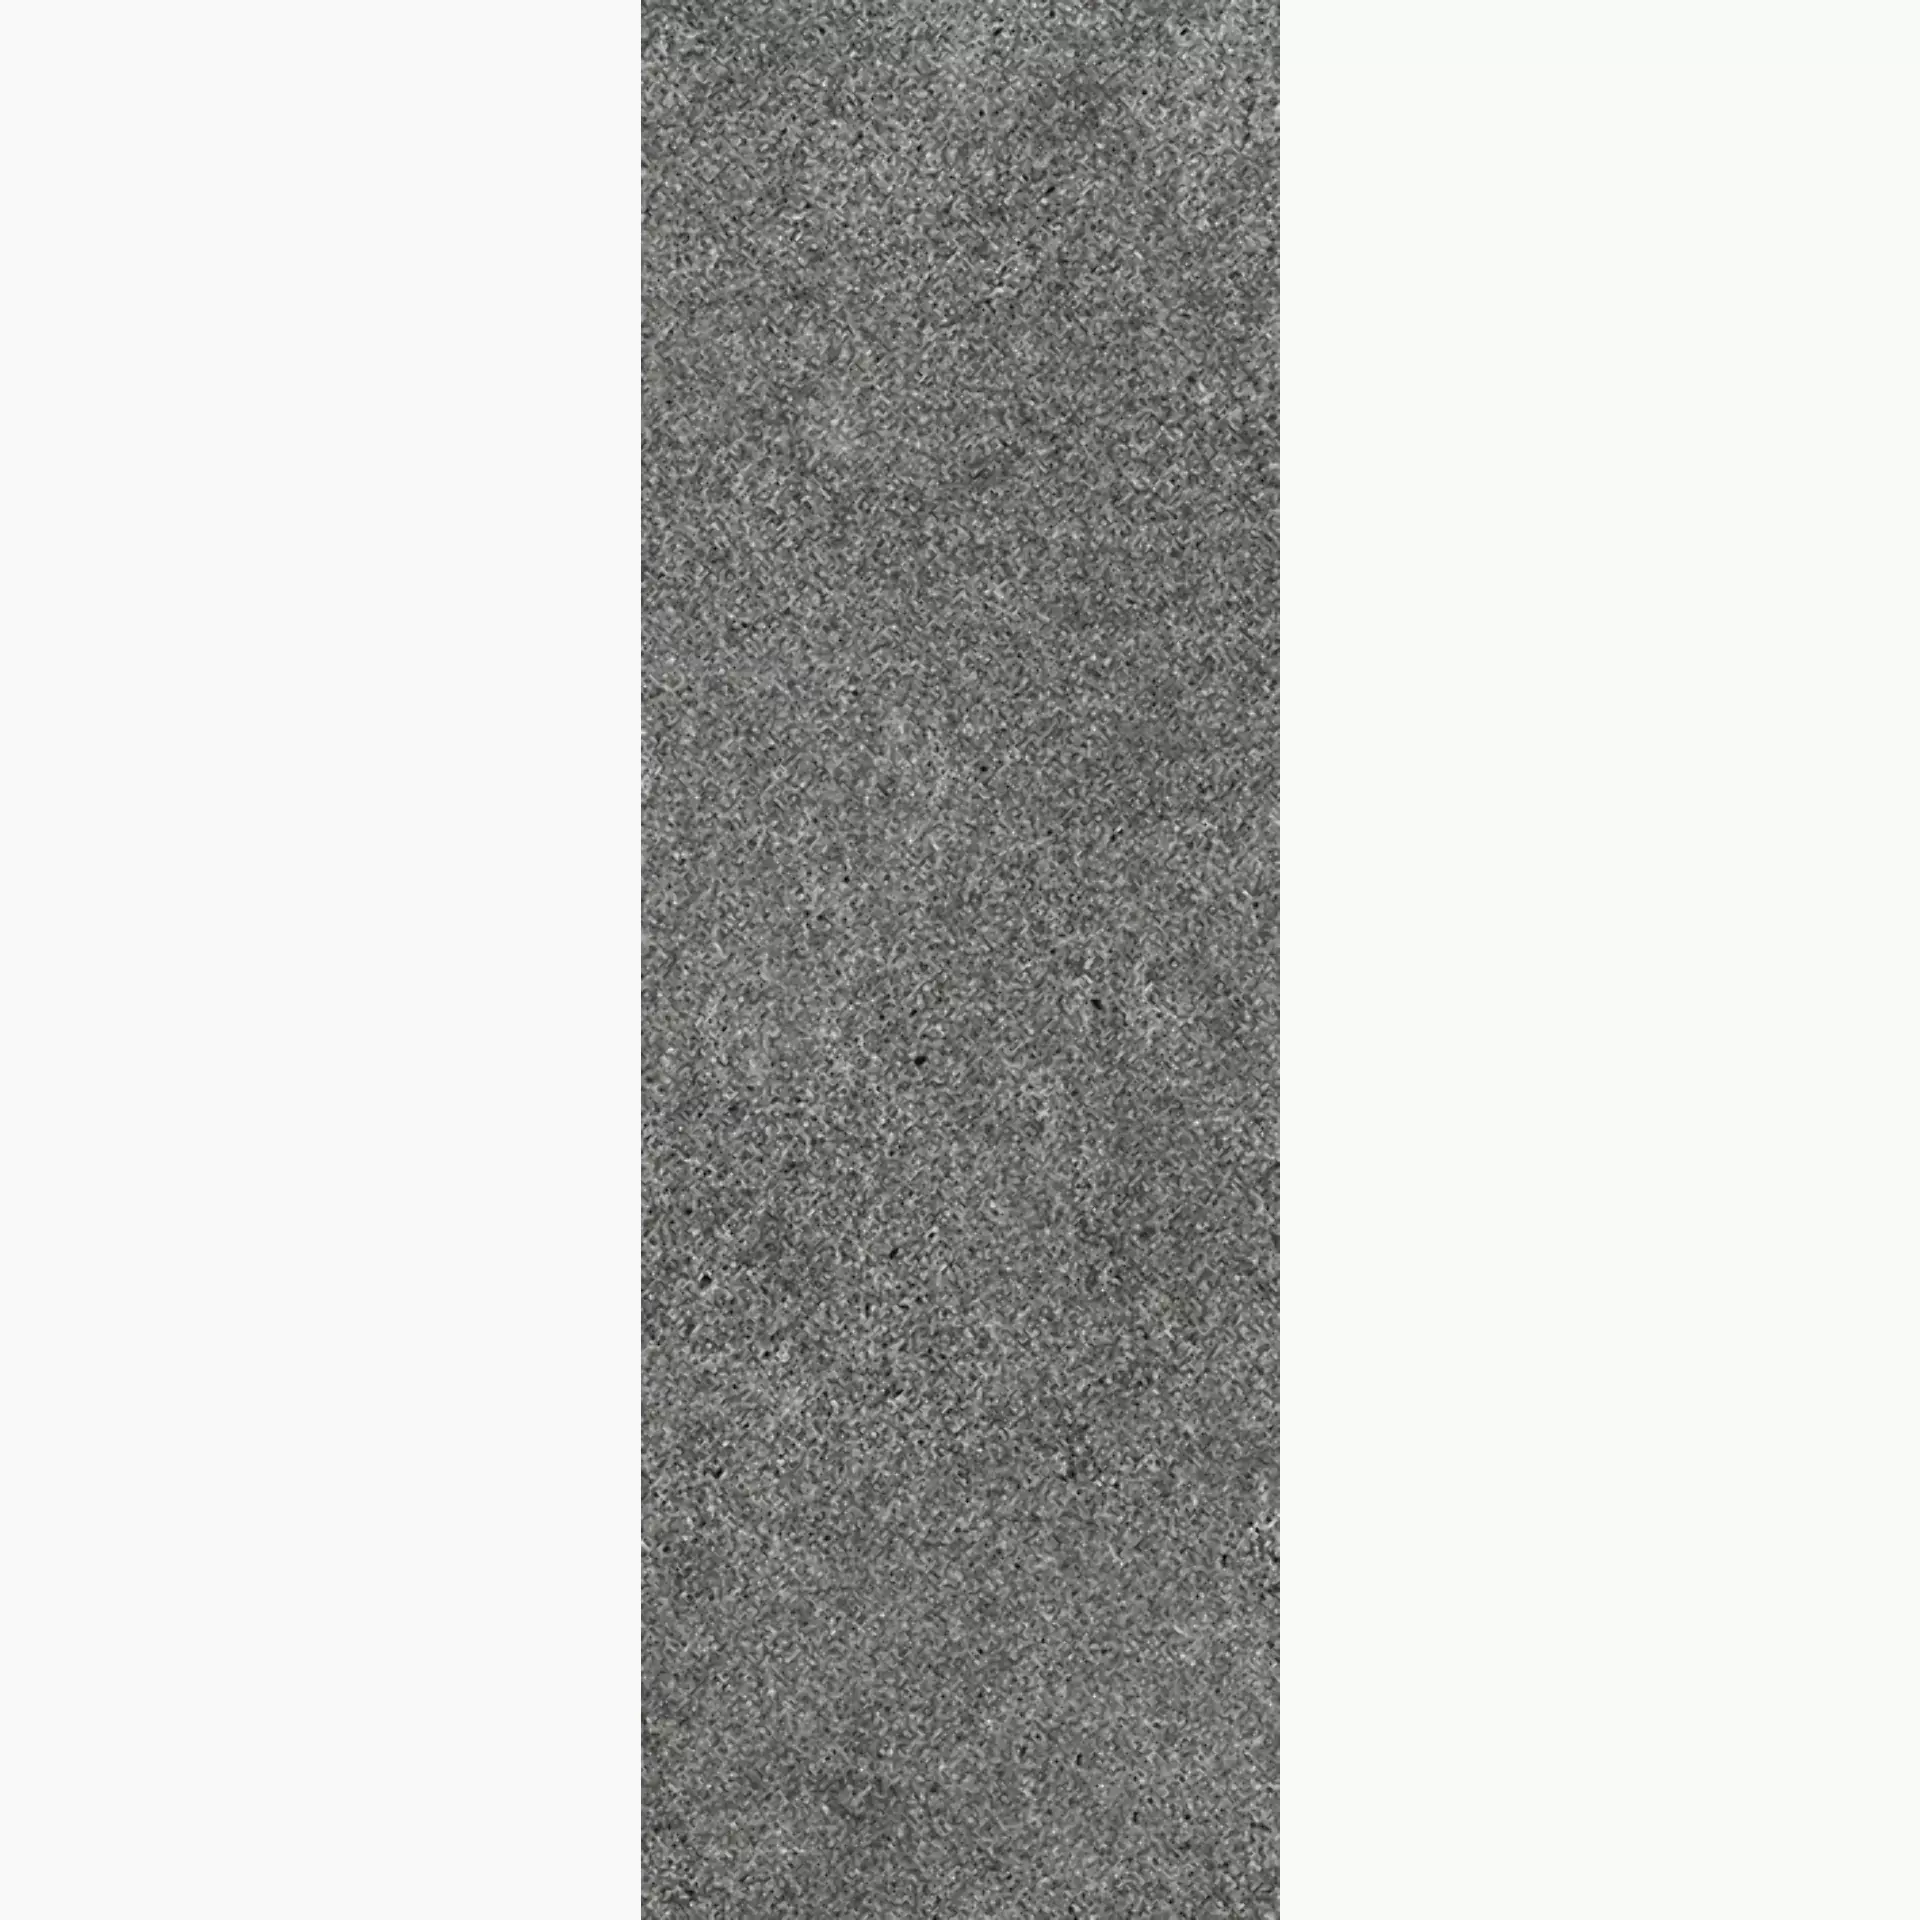 Wandfliese,Bodenfliese Villeroy & Boch Solid Tones Dark Stone Matt Dark Stone 2621-PS62 matt 20x60cm rektifiziert 10mm